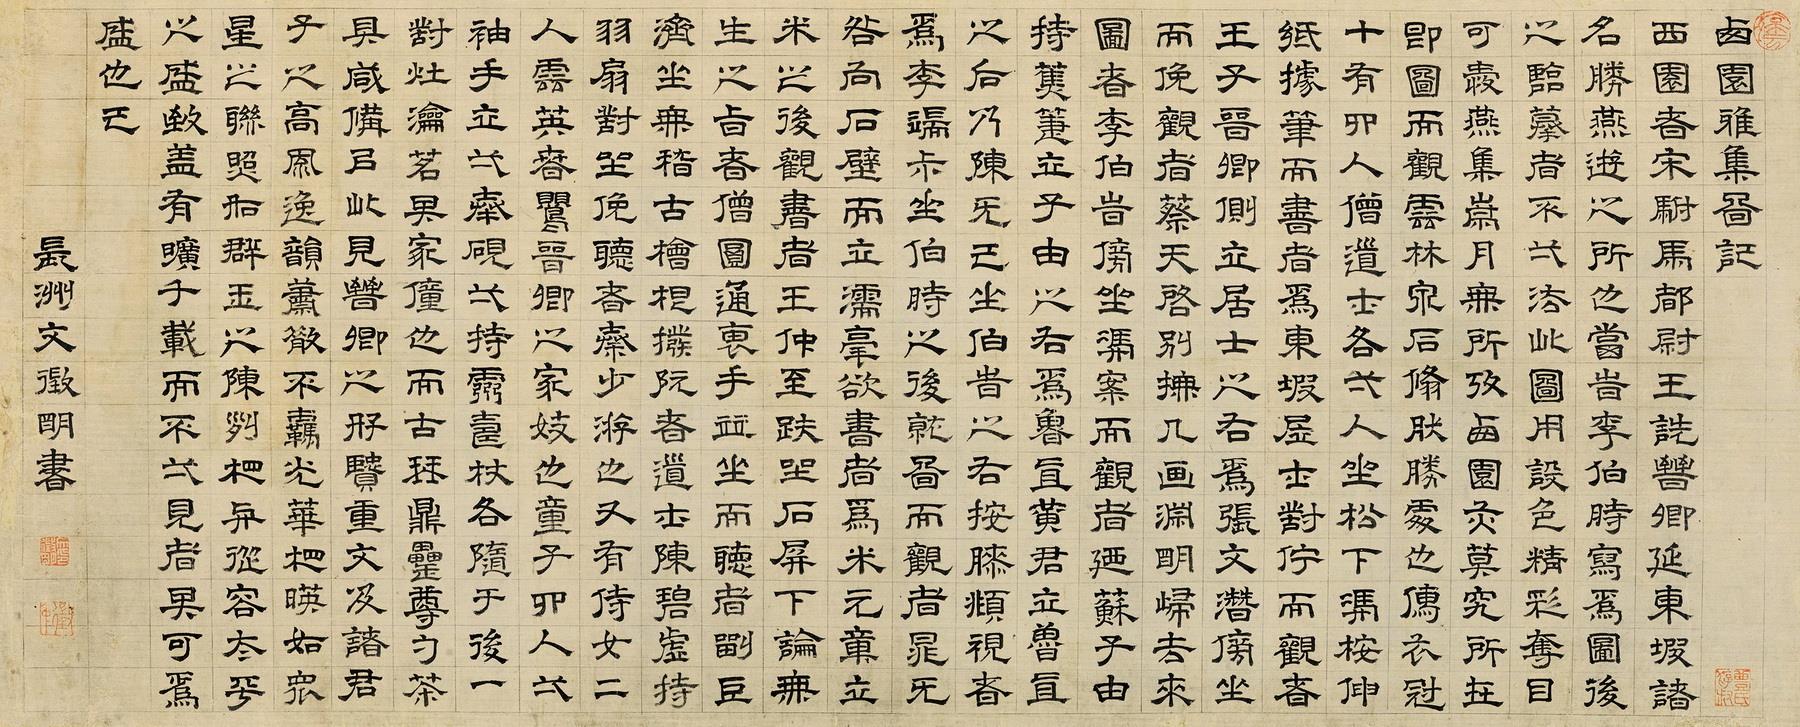 文徵明(1470-1559) 隶书"西园雅集图记"